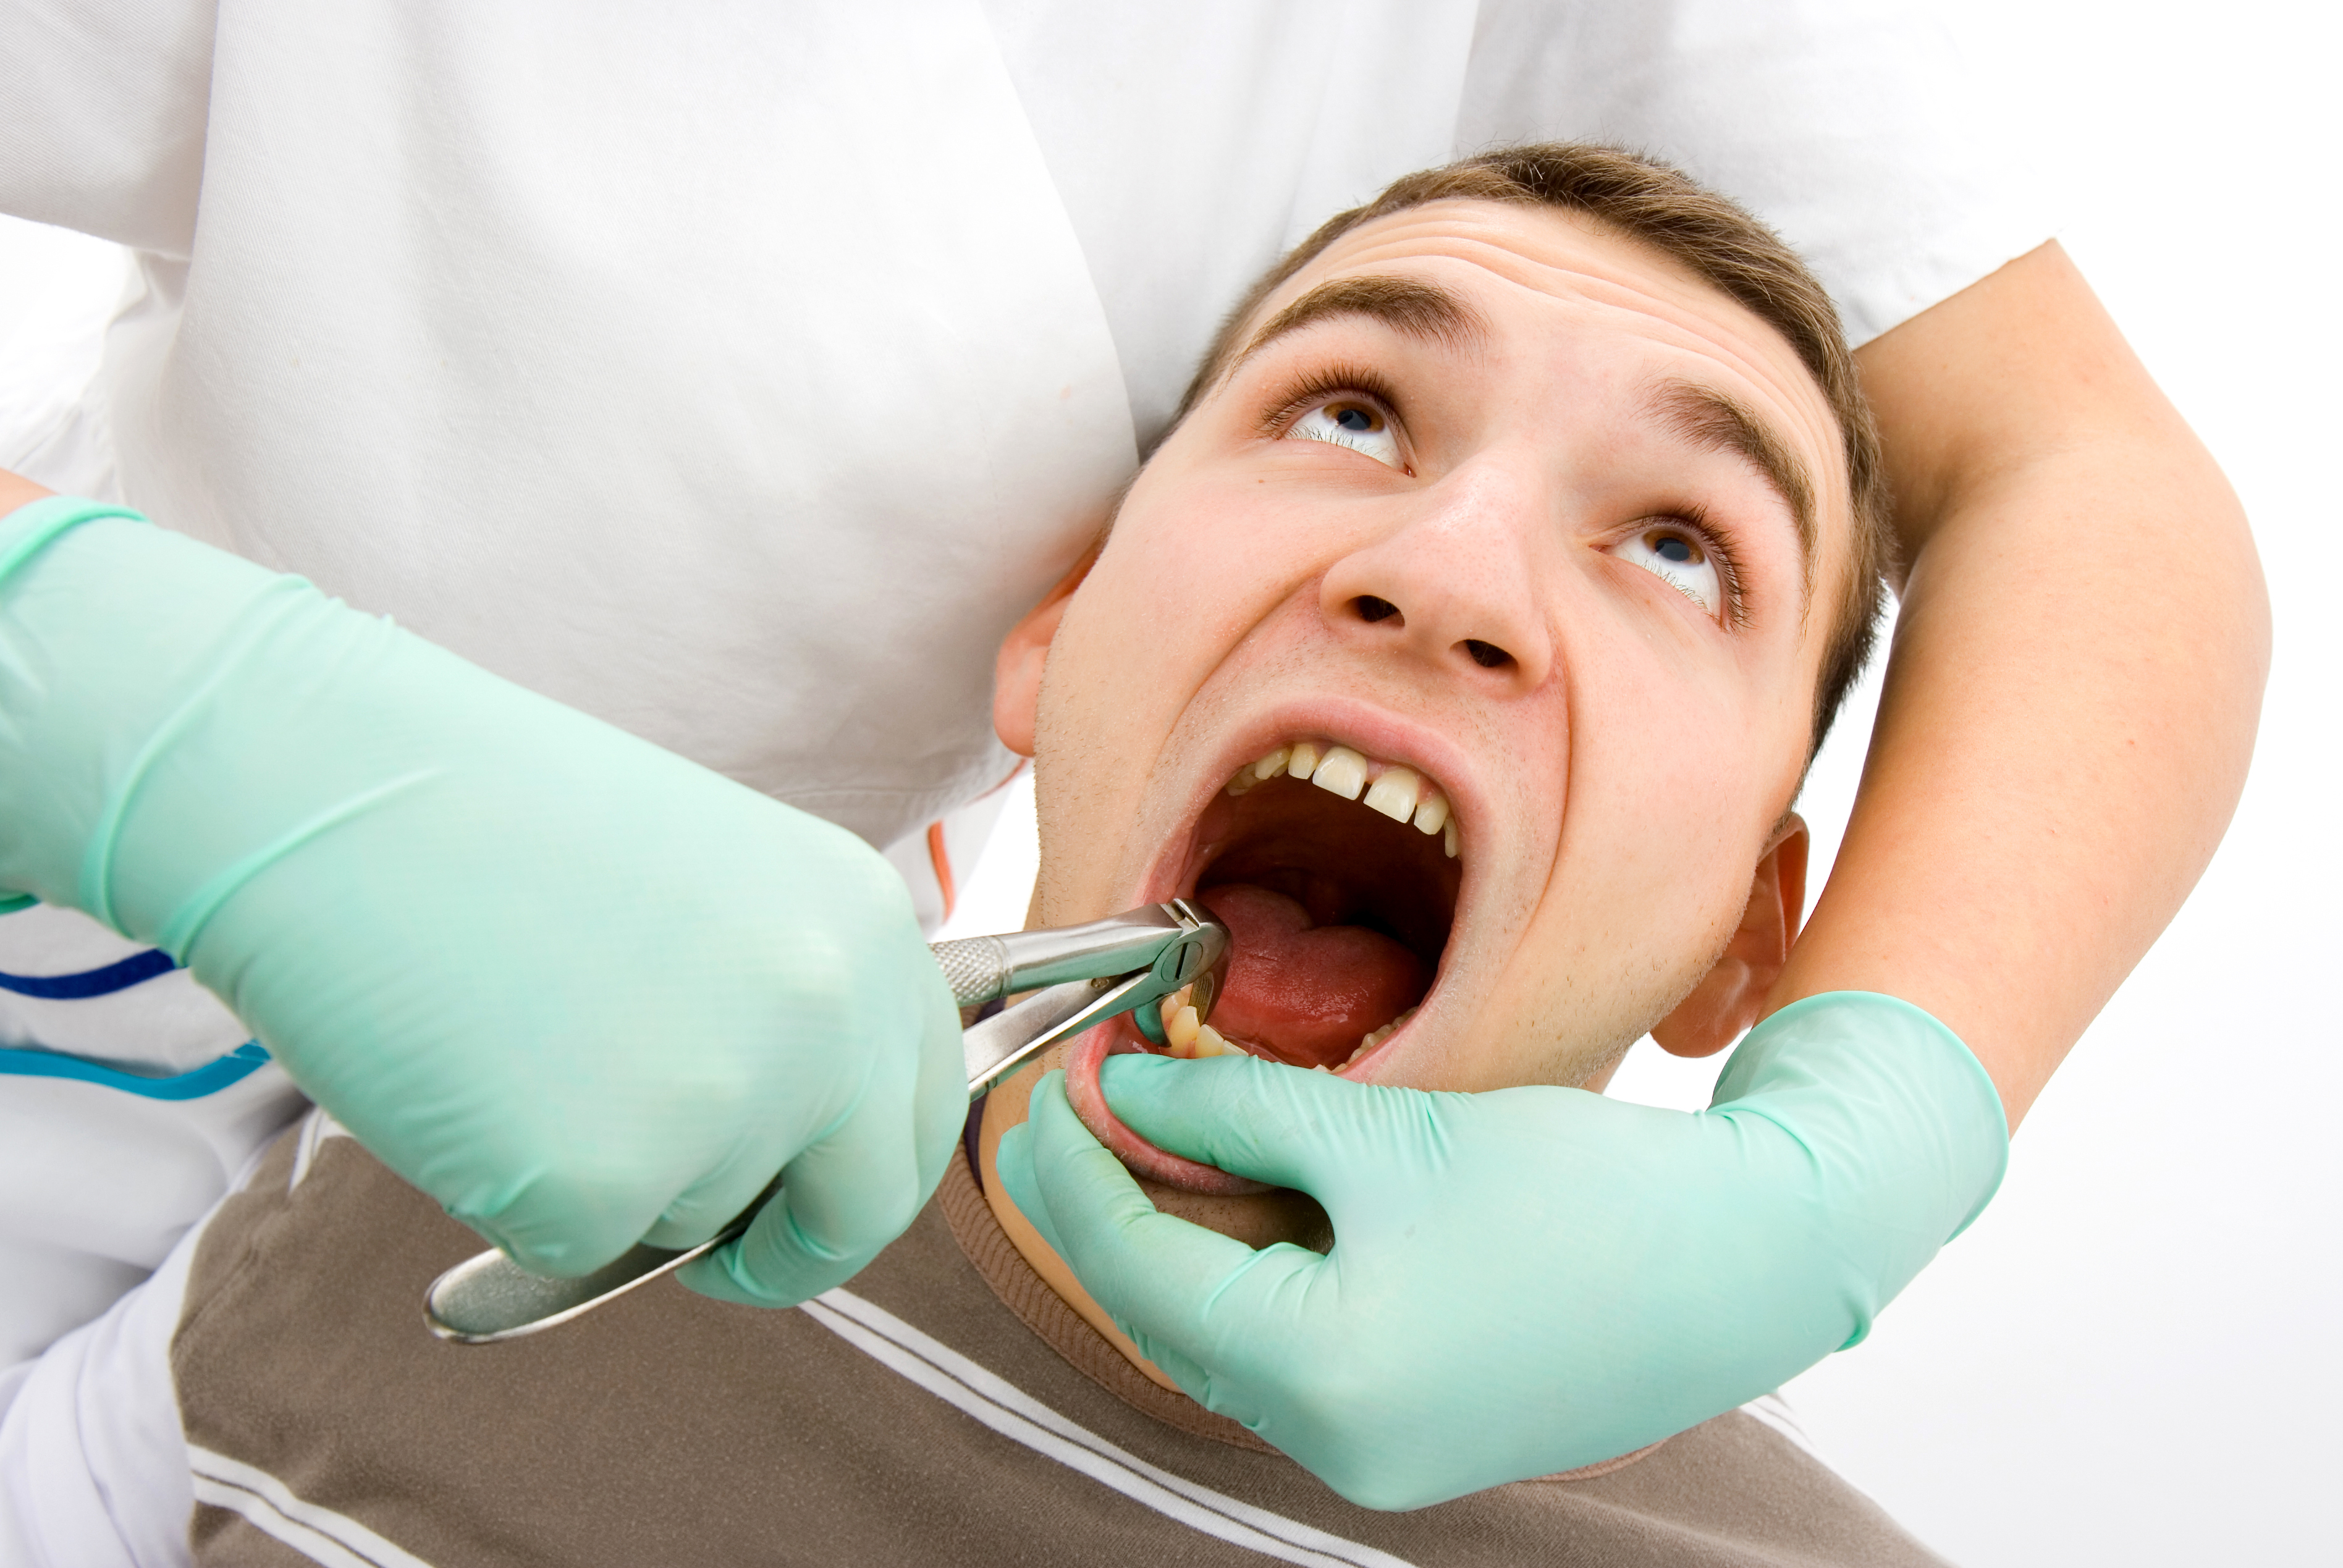 Как убить нерв в зубе